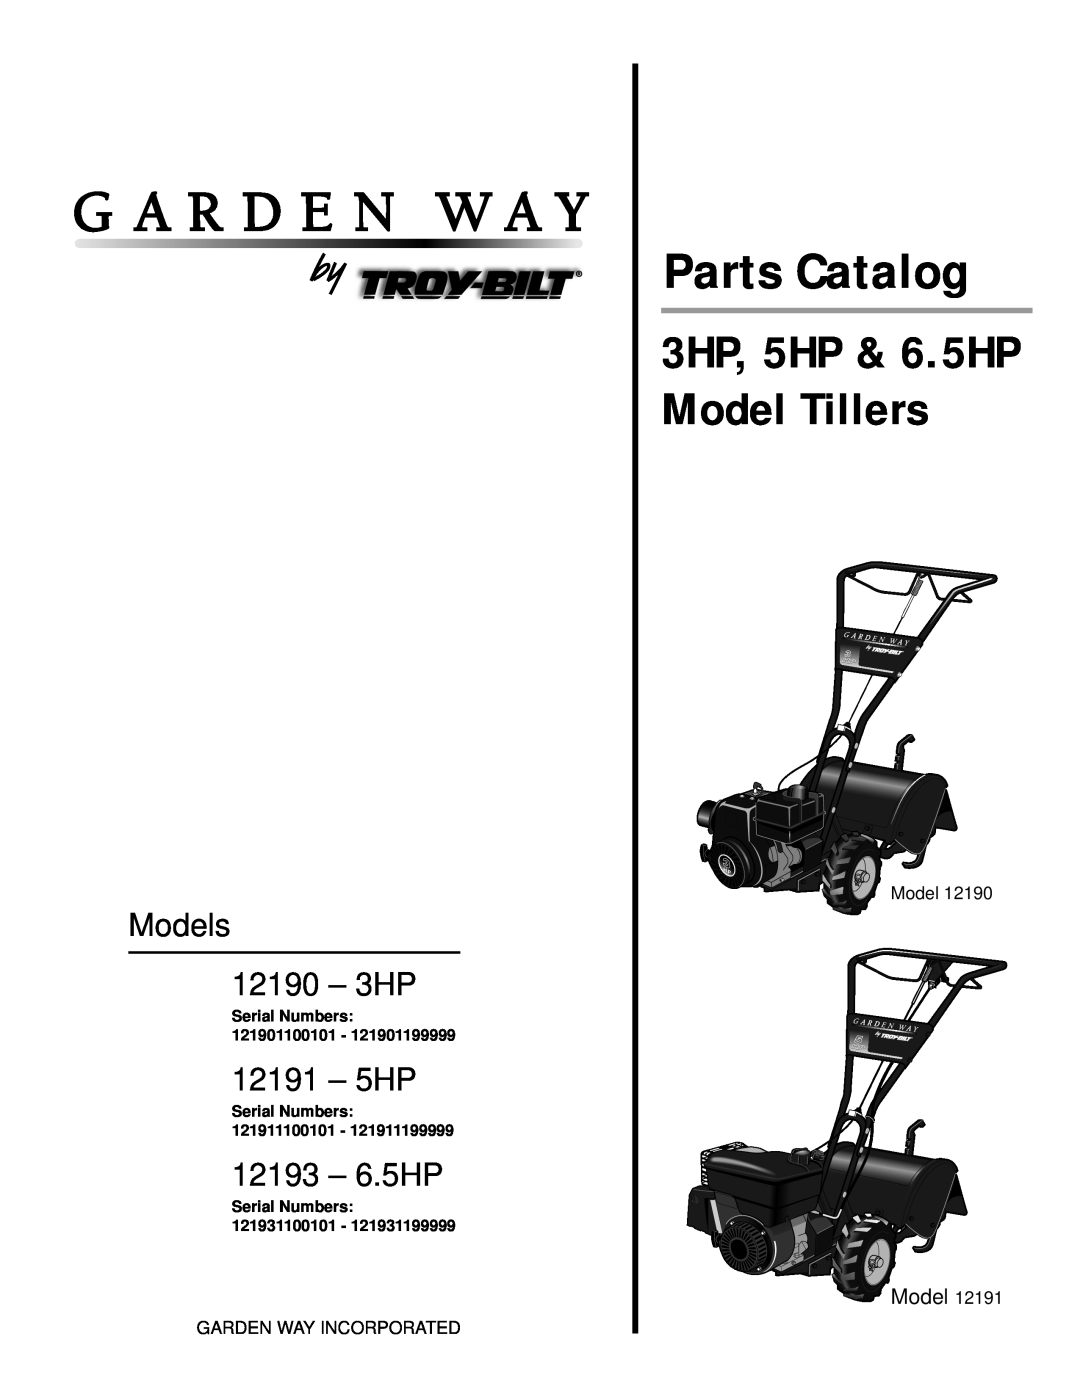 Troy-Bilt 12193-6.5HP, 12191-5HP manual Parts Catalog, 3HP, 5HP & 6.5HP Model Tillers, Models 12190 - 3HP, 12191 - 5HP 